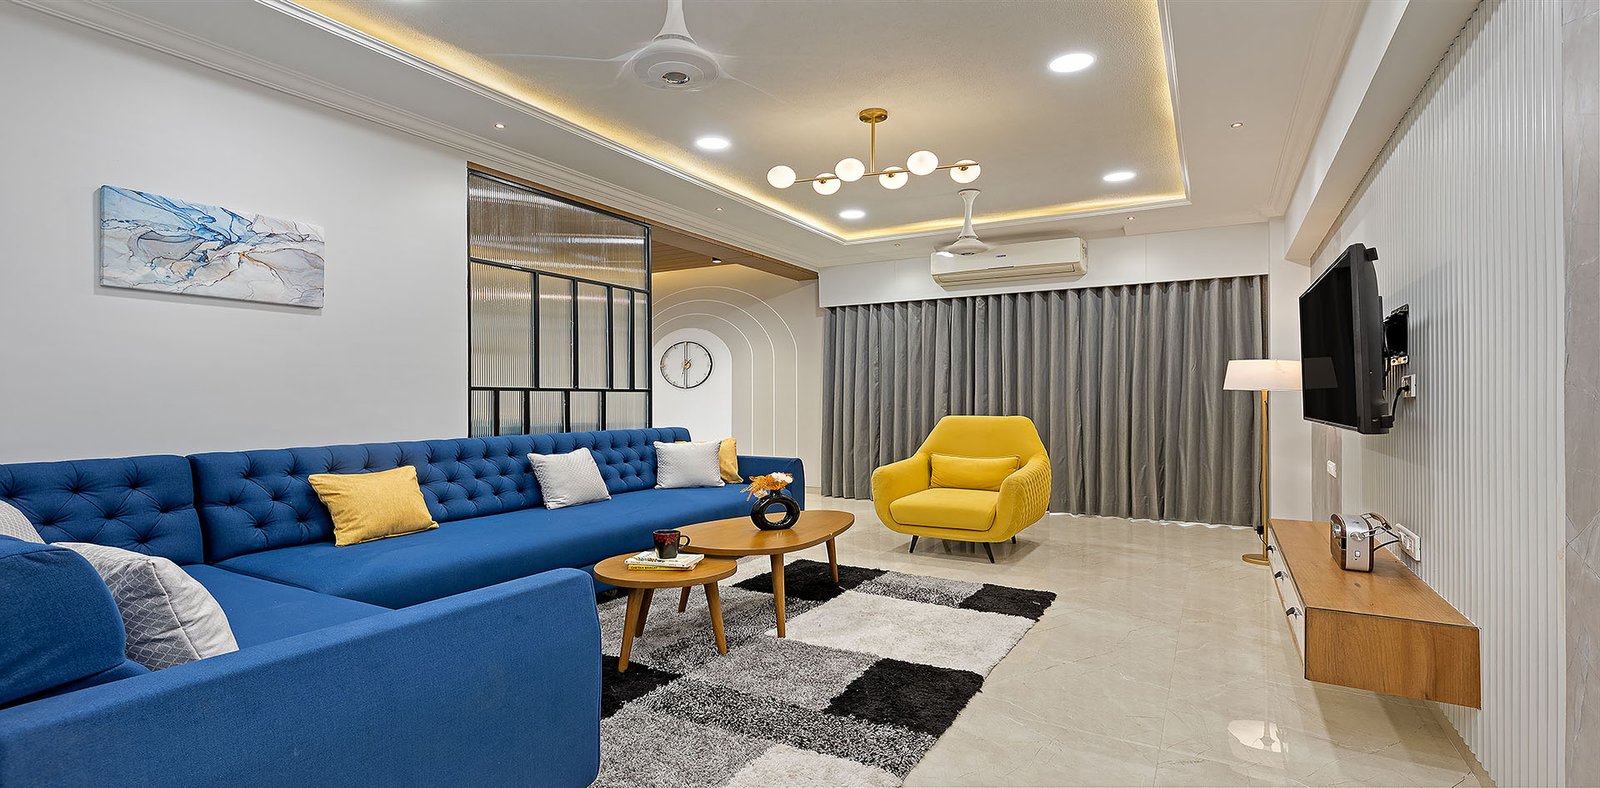  Living Room Design Img